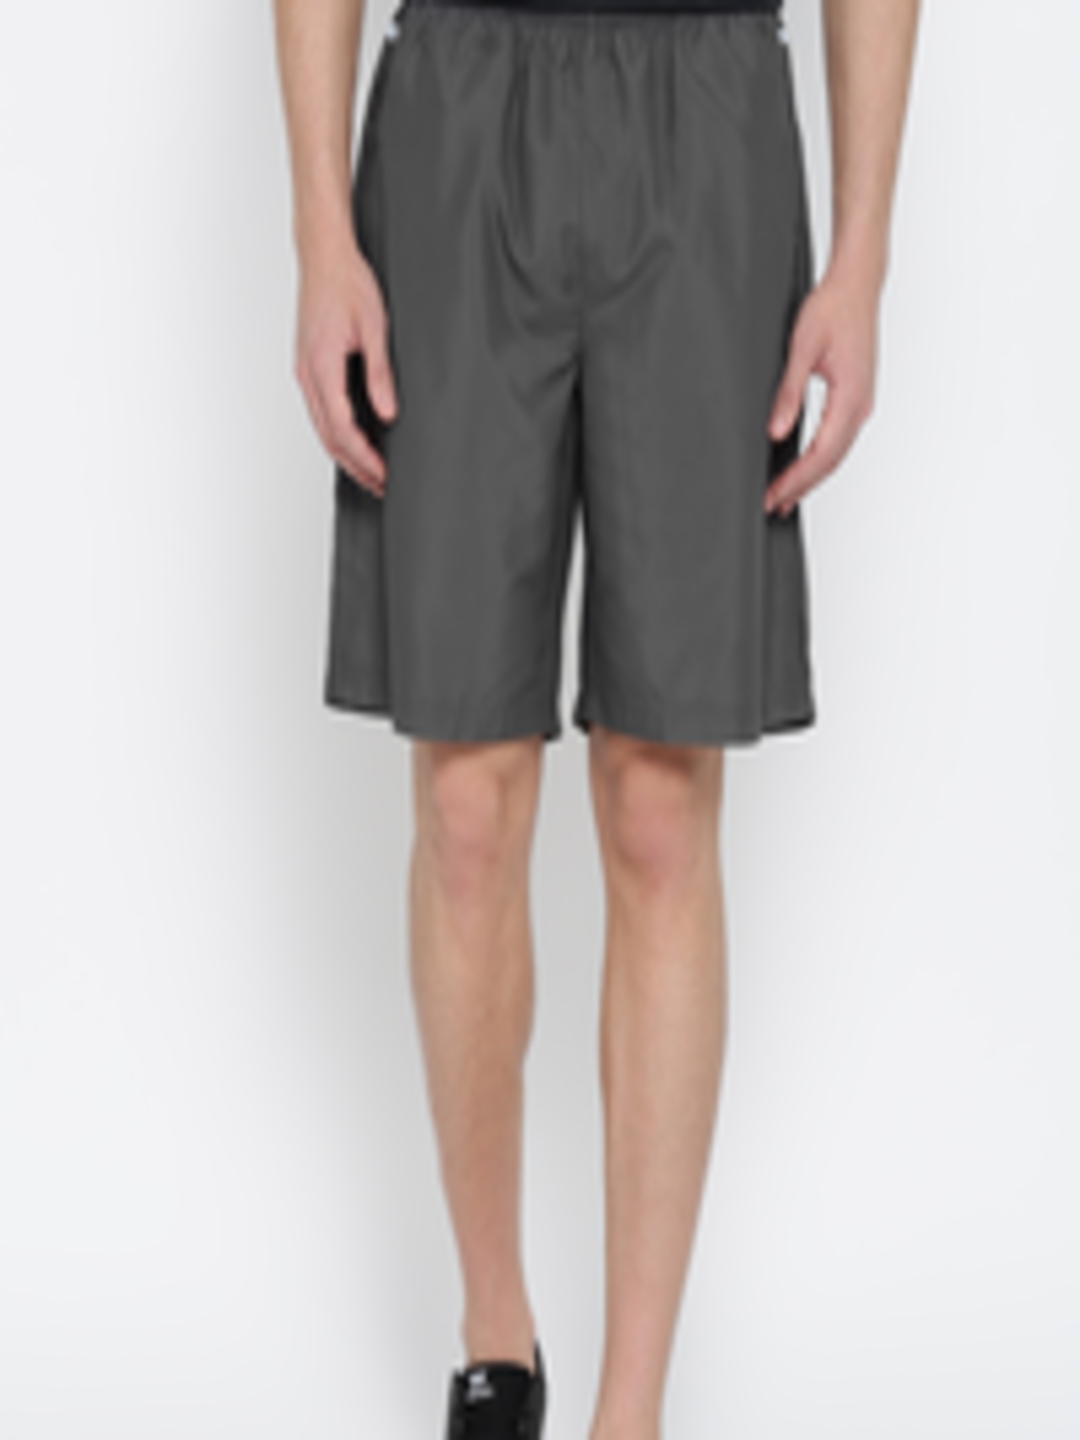 Buy ASICS Grey Training Shorts - Shorts for Men 1038602 | Myntra